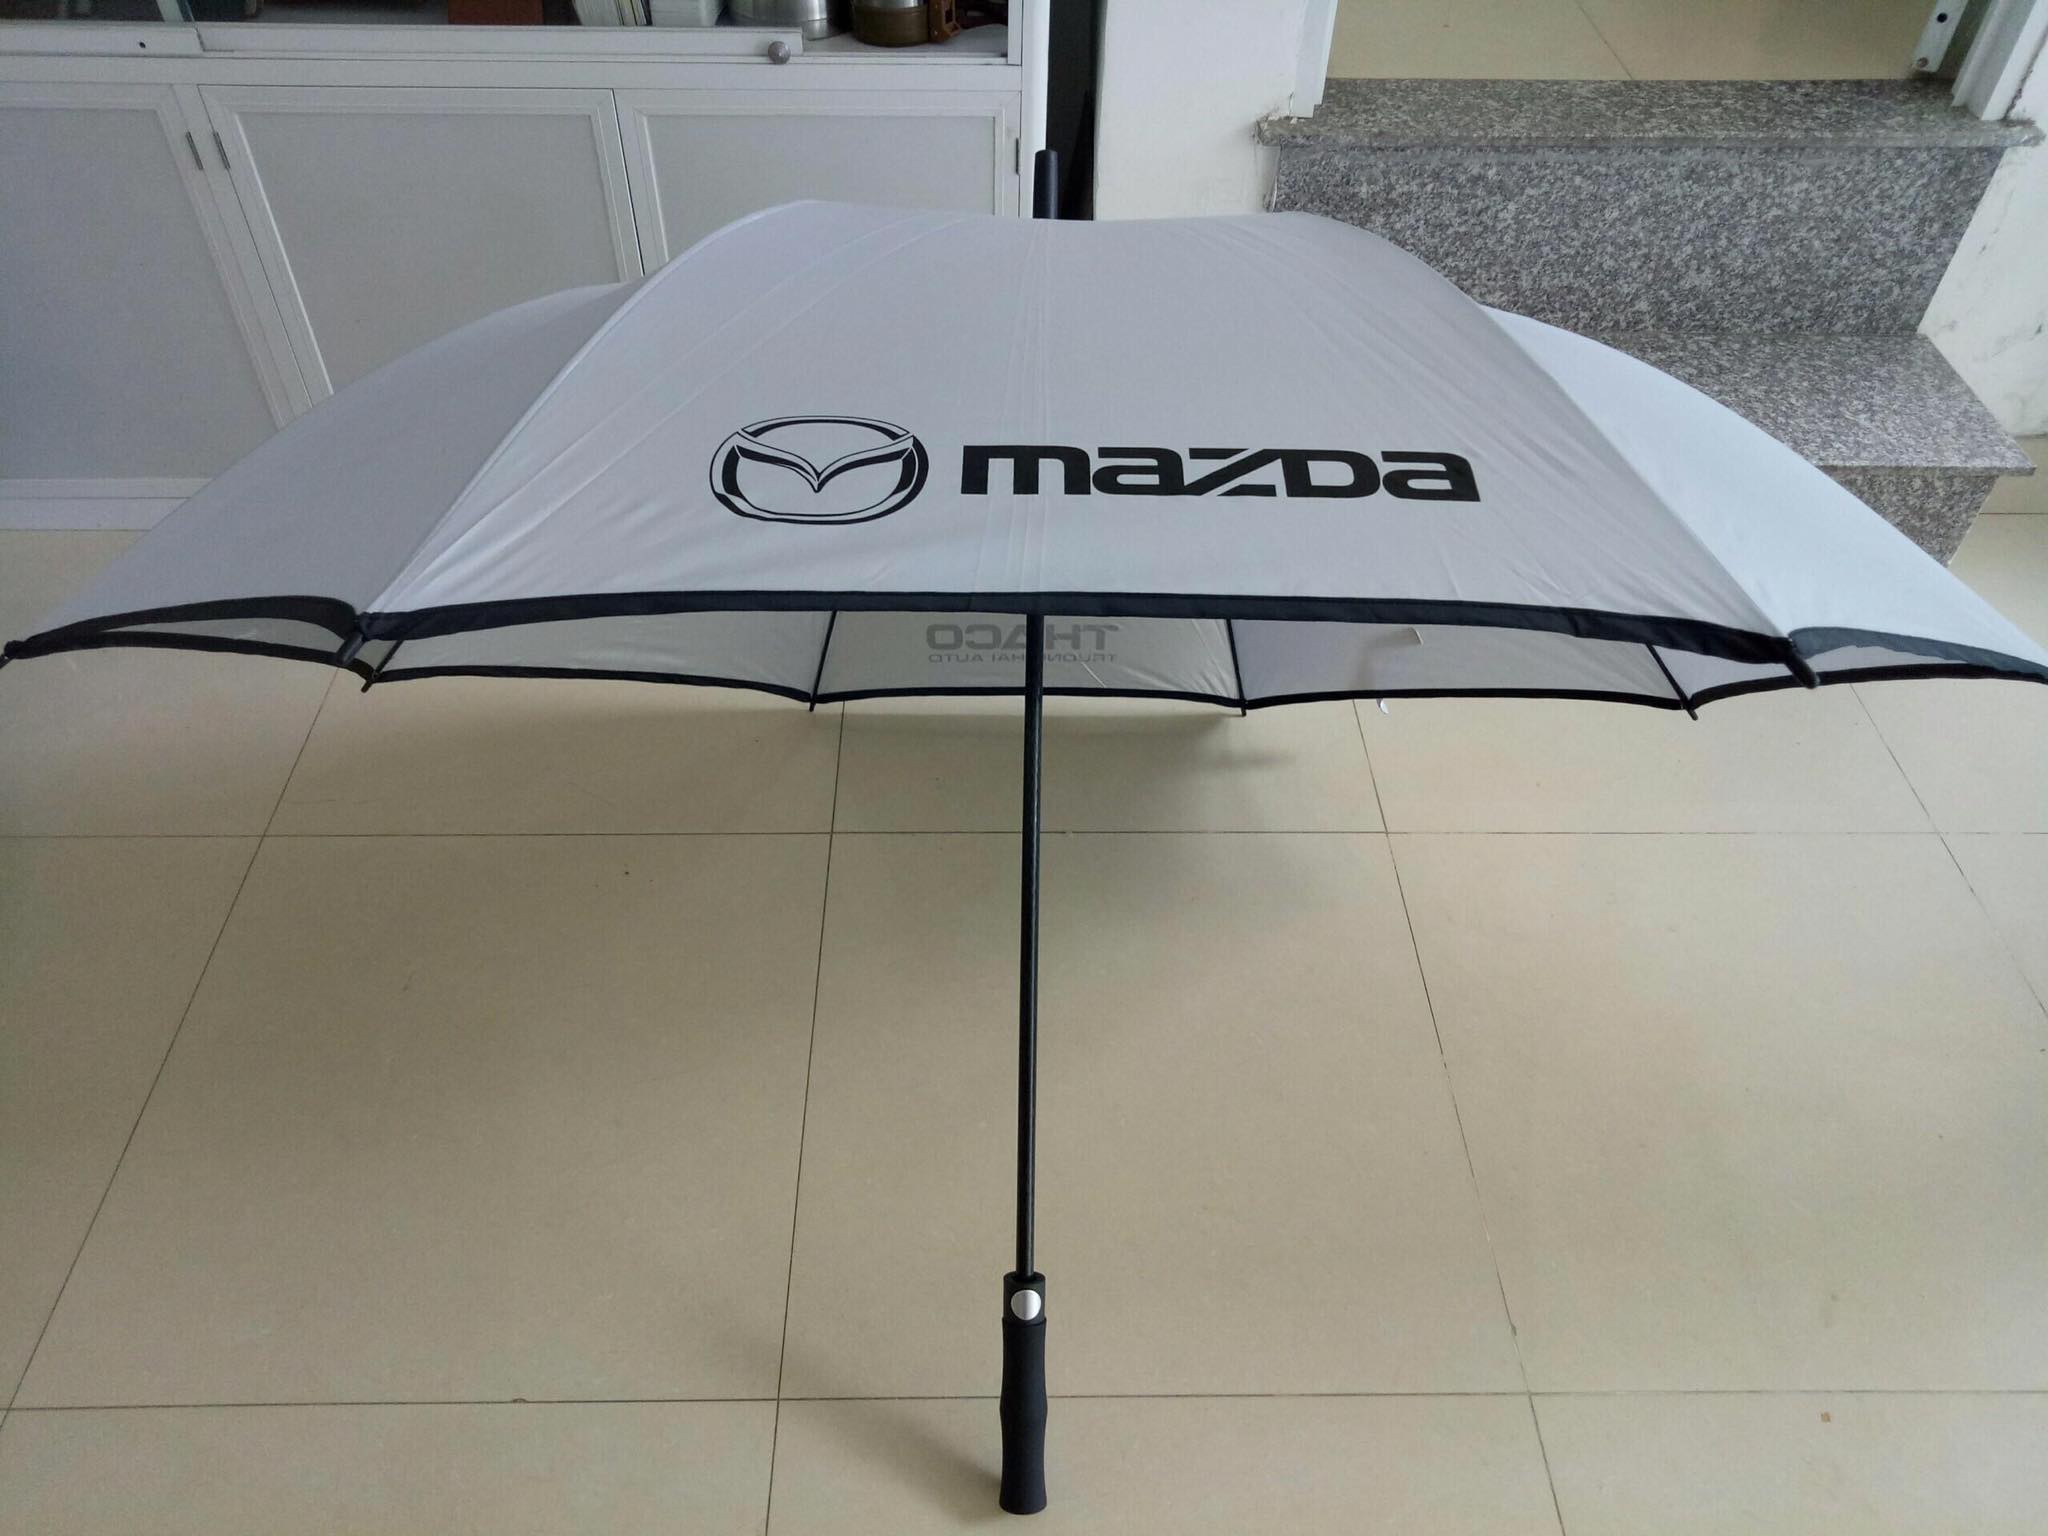 Quà tặng ô dù in logo cho mùa mưa cận kề